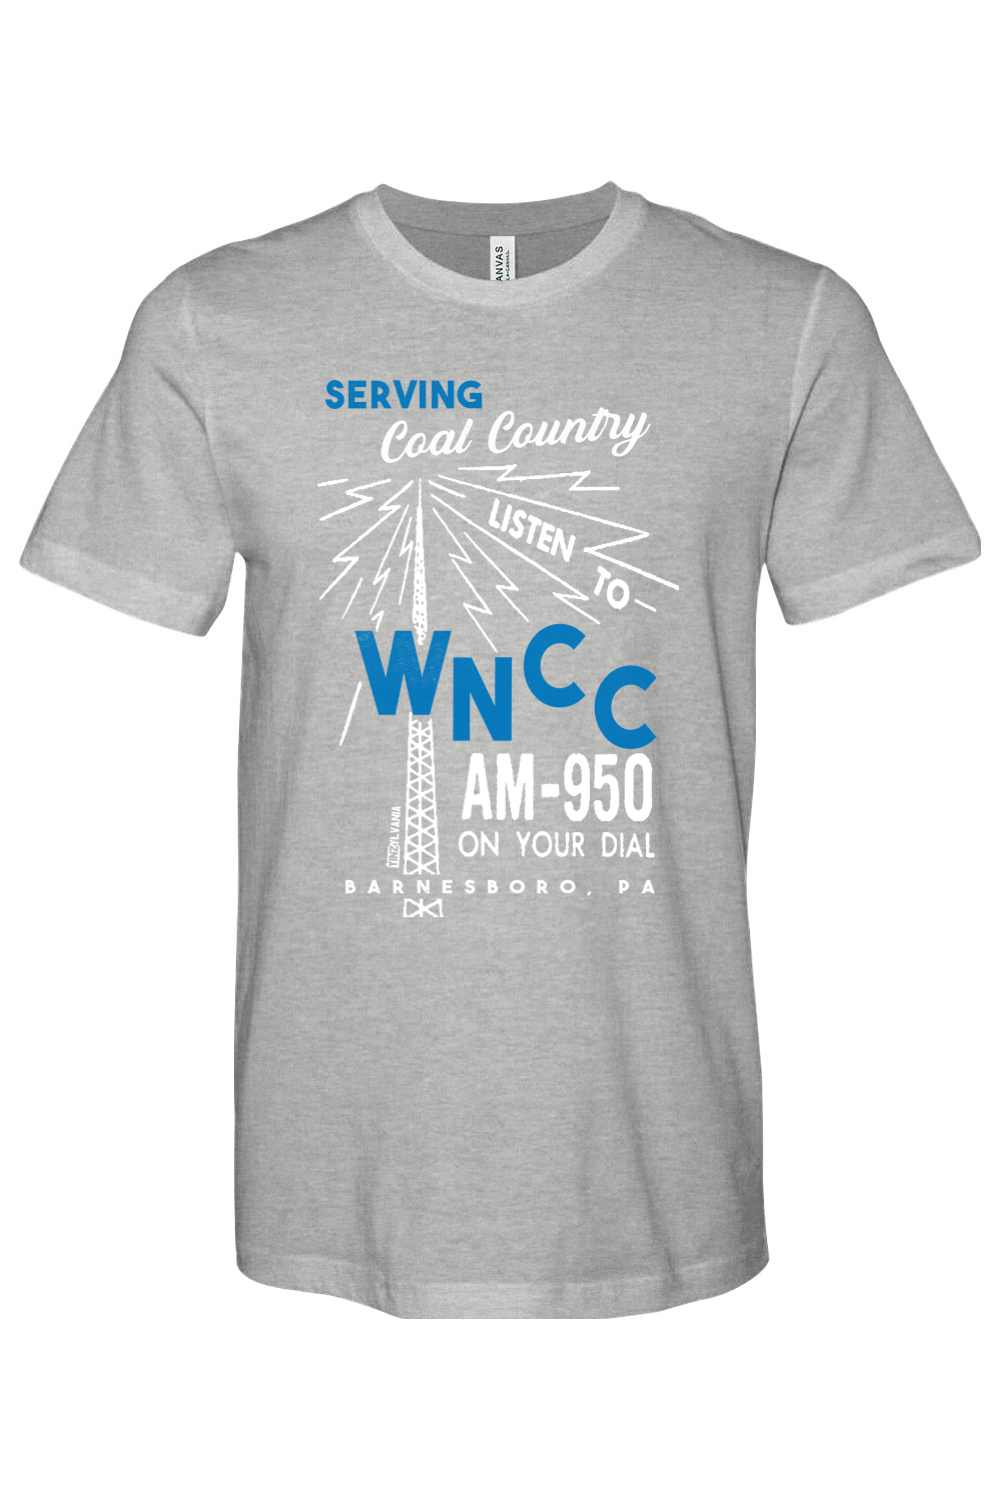 WNCC-AM 950 - Barnesboro, PA